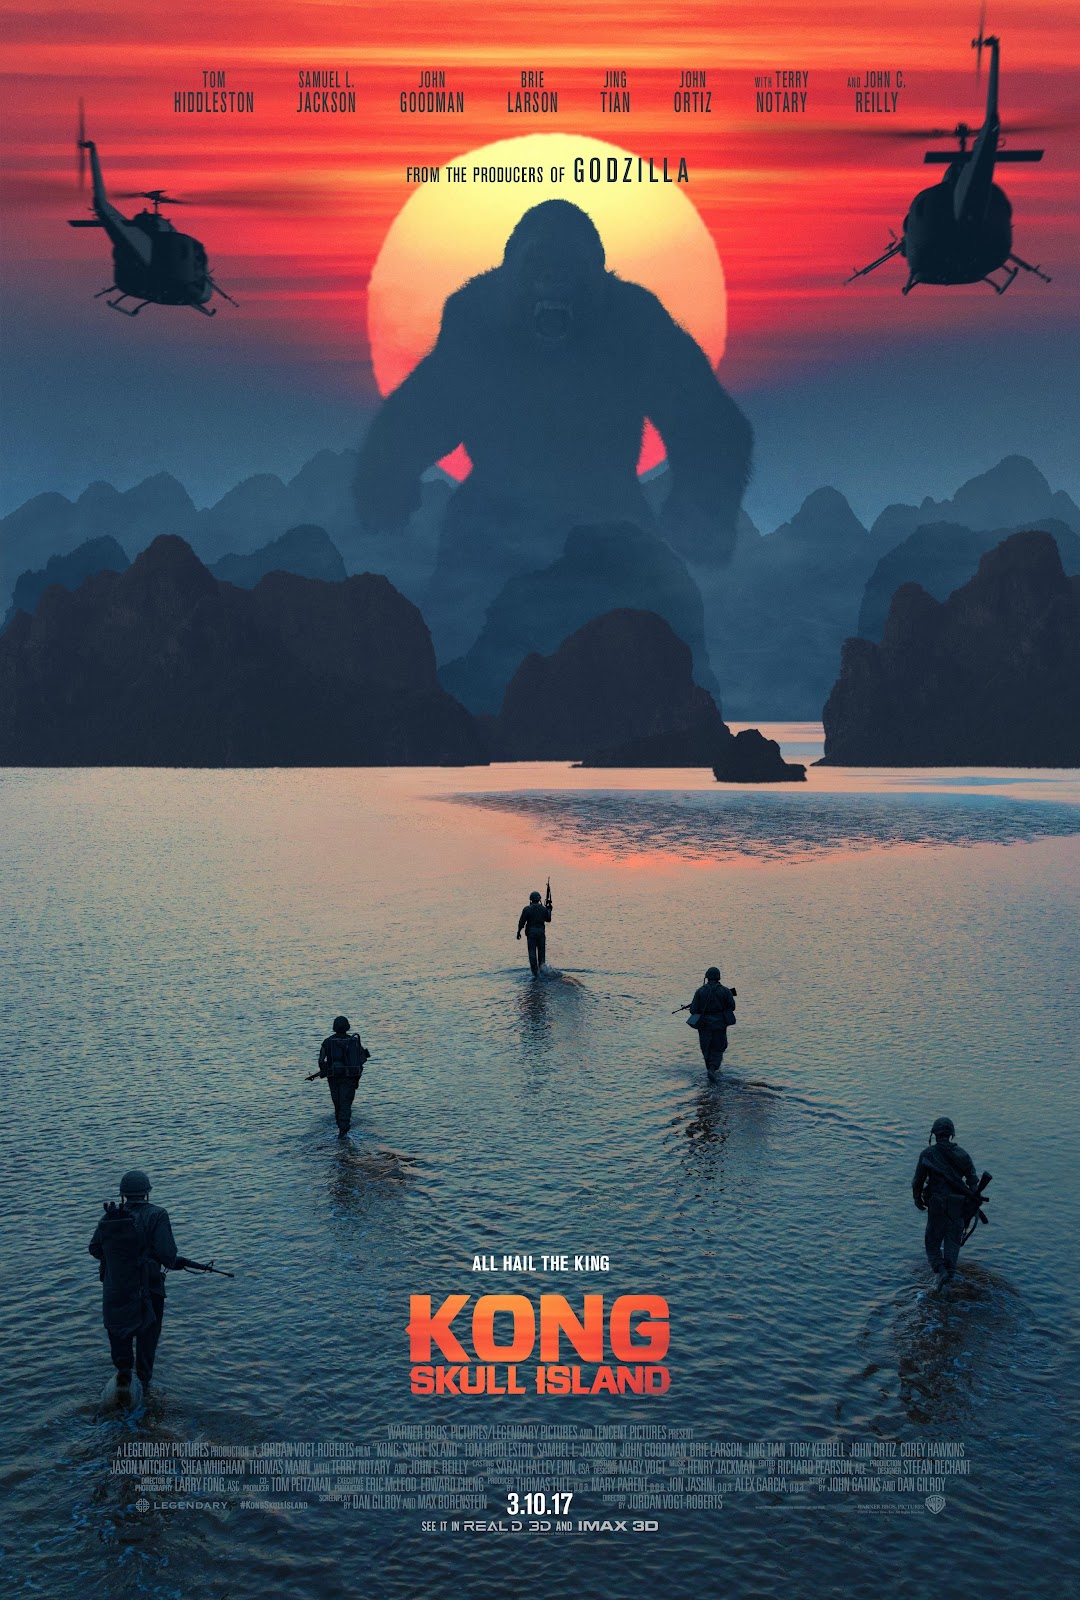 ｃｉａ こちら映画中央情報局です Skull Island 巨大生物が復活するモンスター シリーズの最新作 コング スカル アイランド が 新しい劇場版の予告編と キング コングが出現したポスターを2点同時にリリース